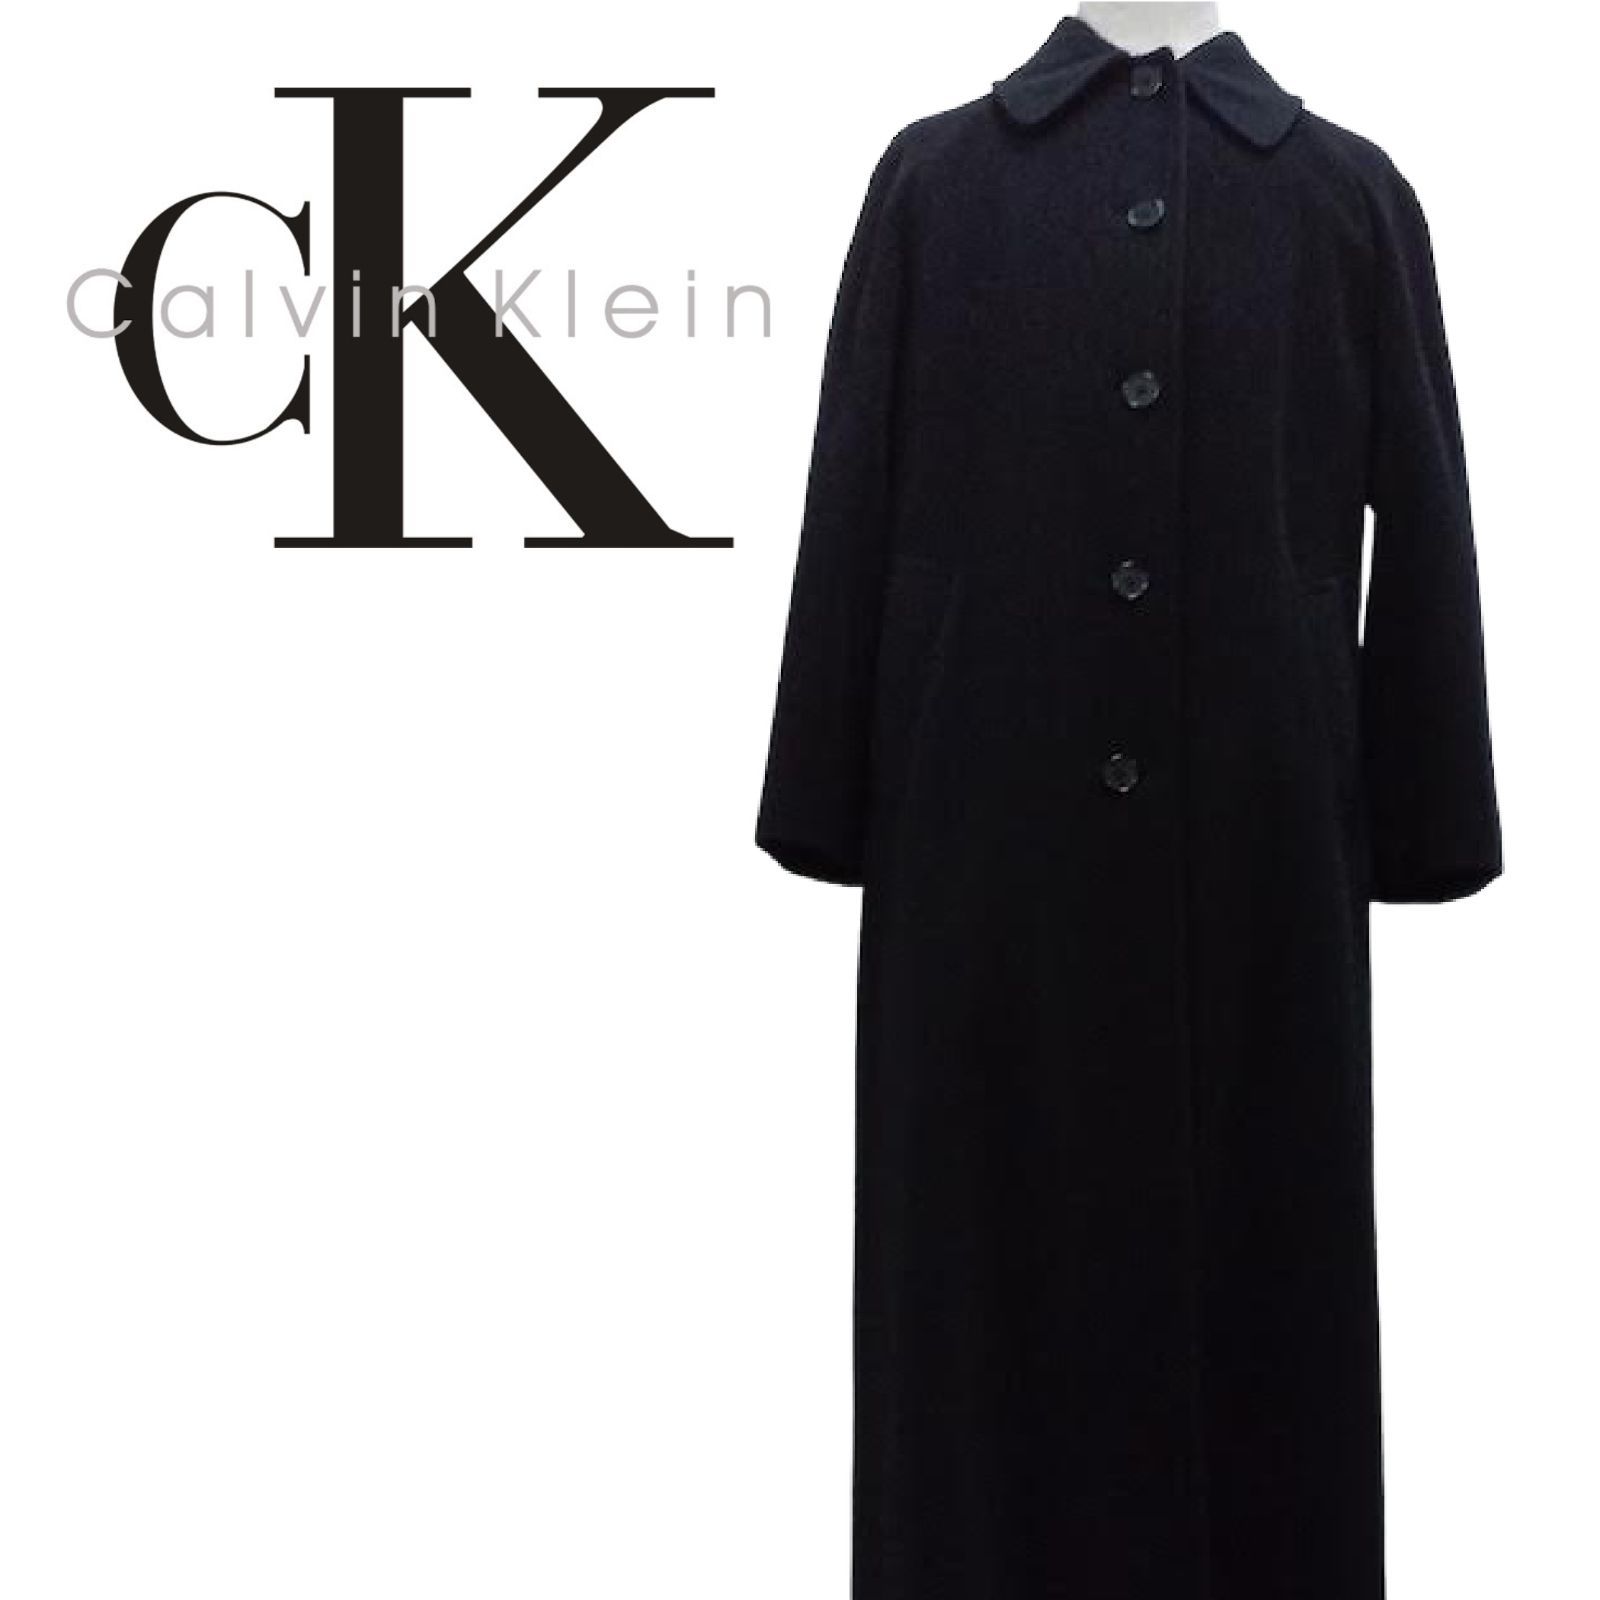 【美品】Calvin Klein  382-5 CCO YP　ロングコート